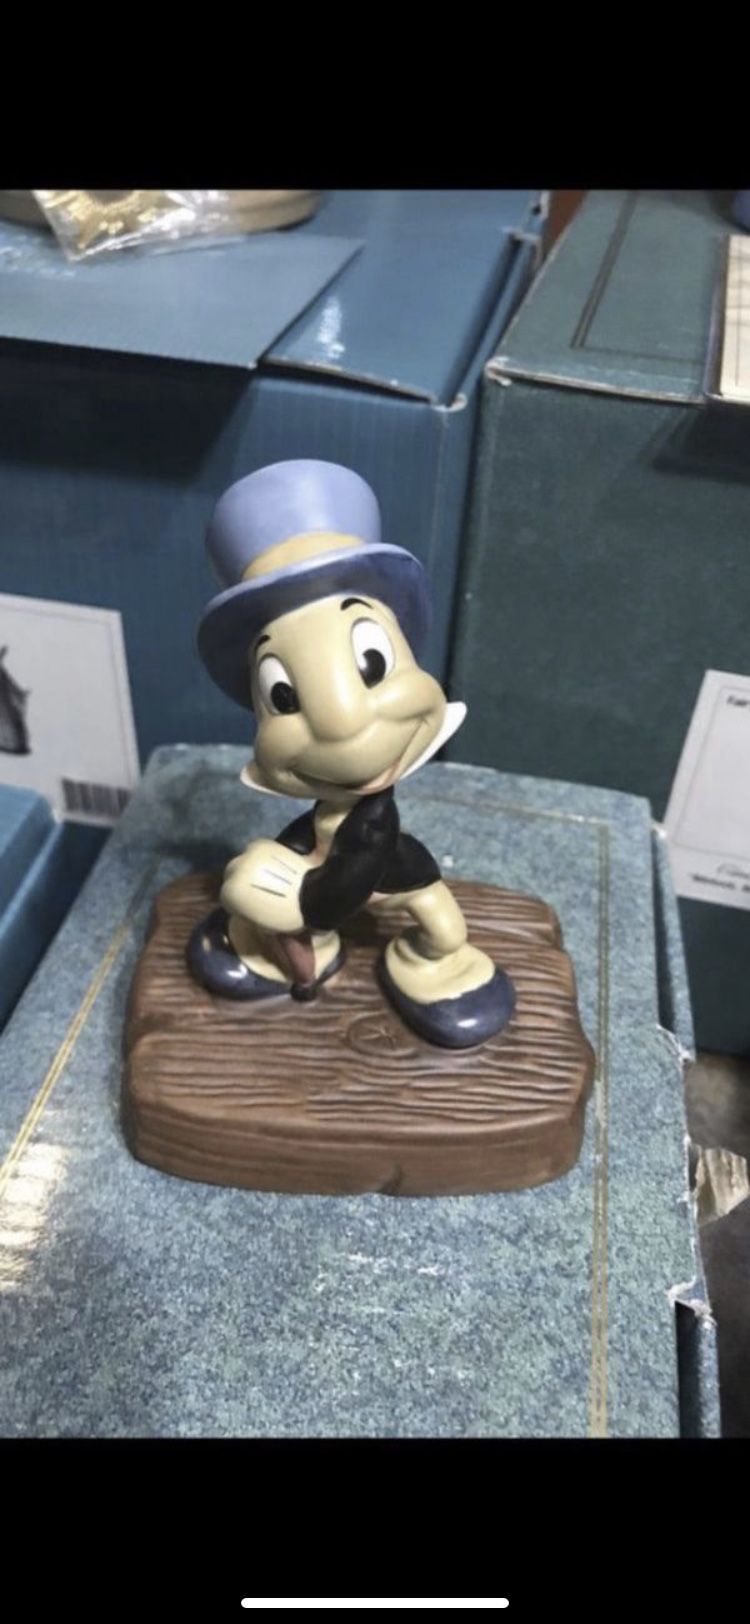 WDCC Jiminy Cricket “Cricket’s the Name - Jiminy Cricket ”Disney Figurine